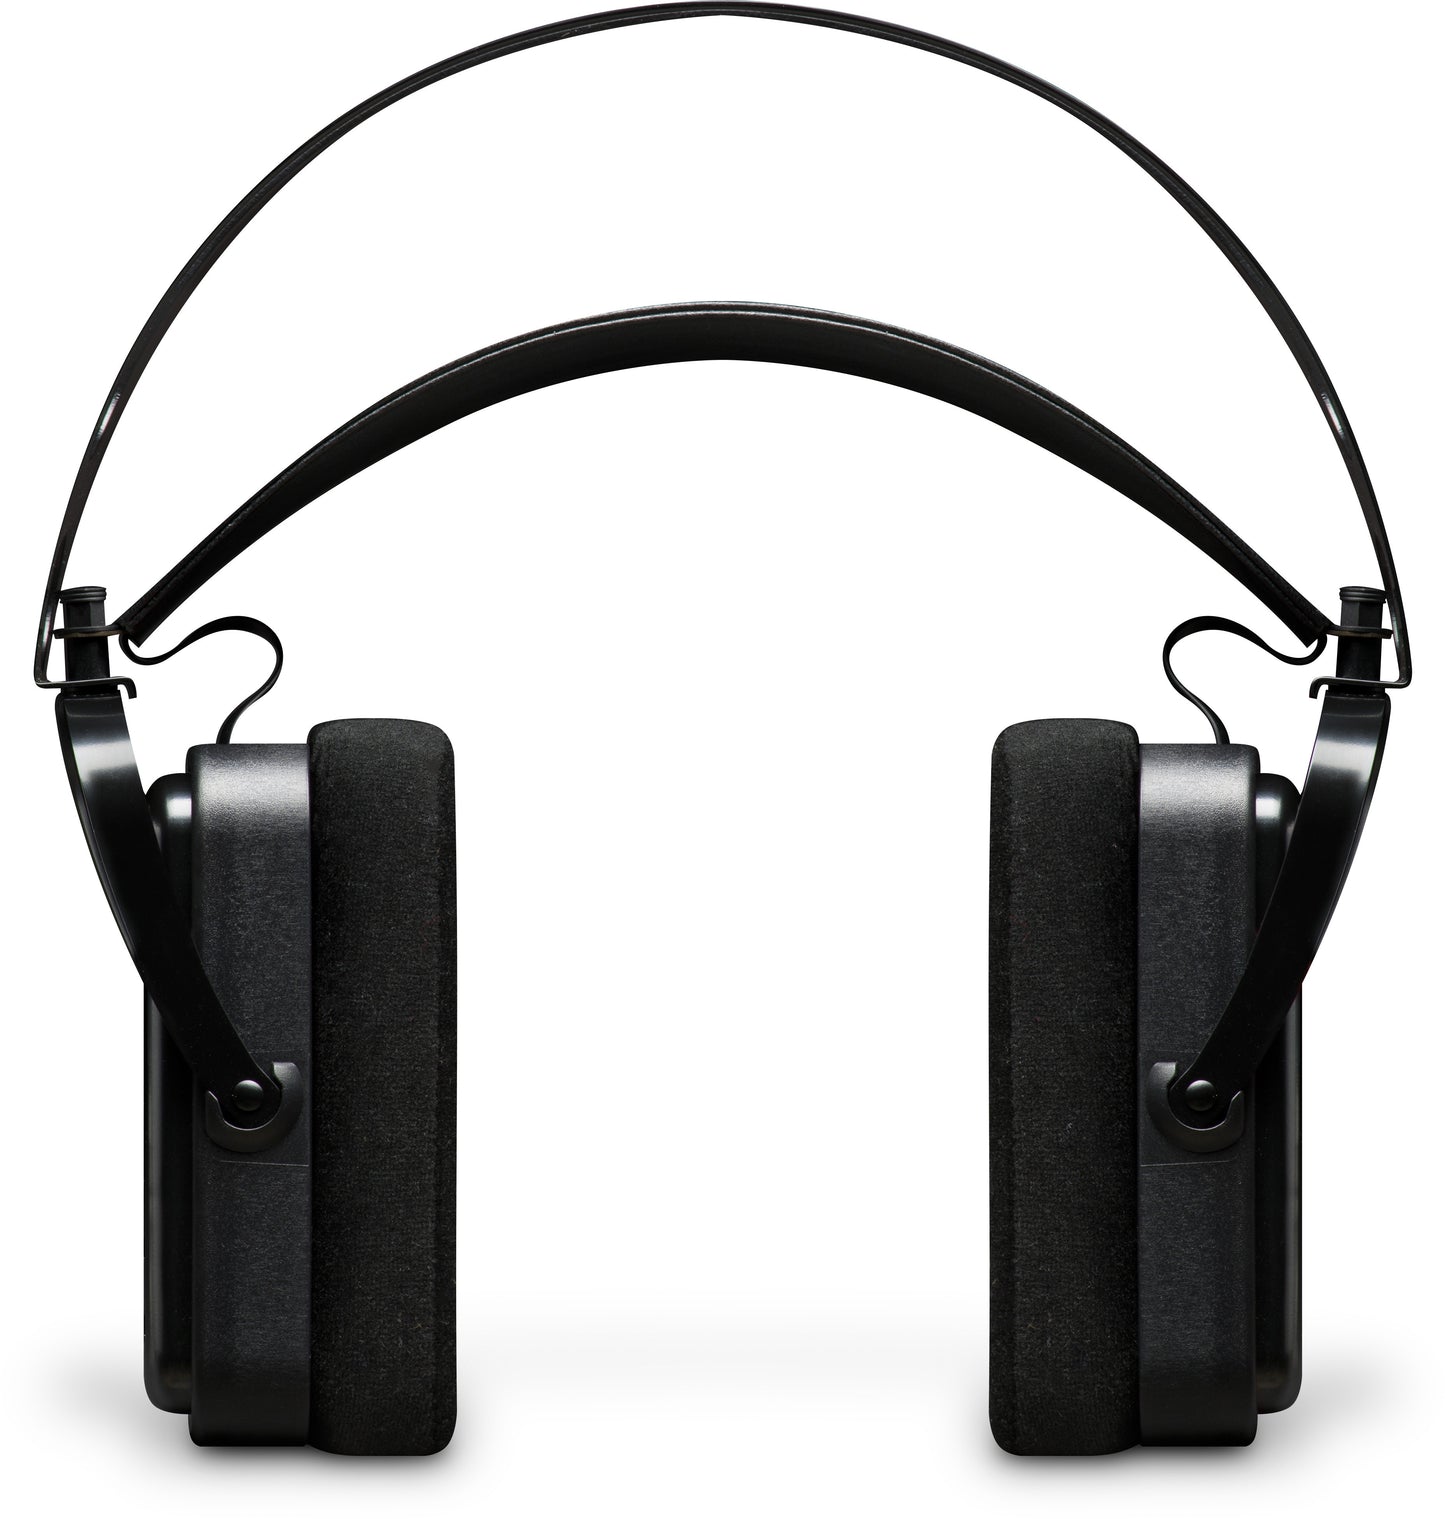 Avantone Planar Open-back Studio Reference Headphones